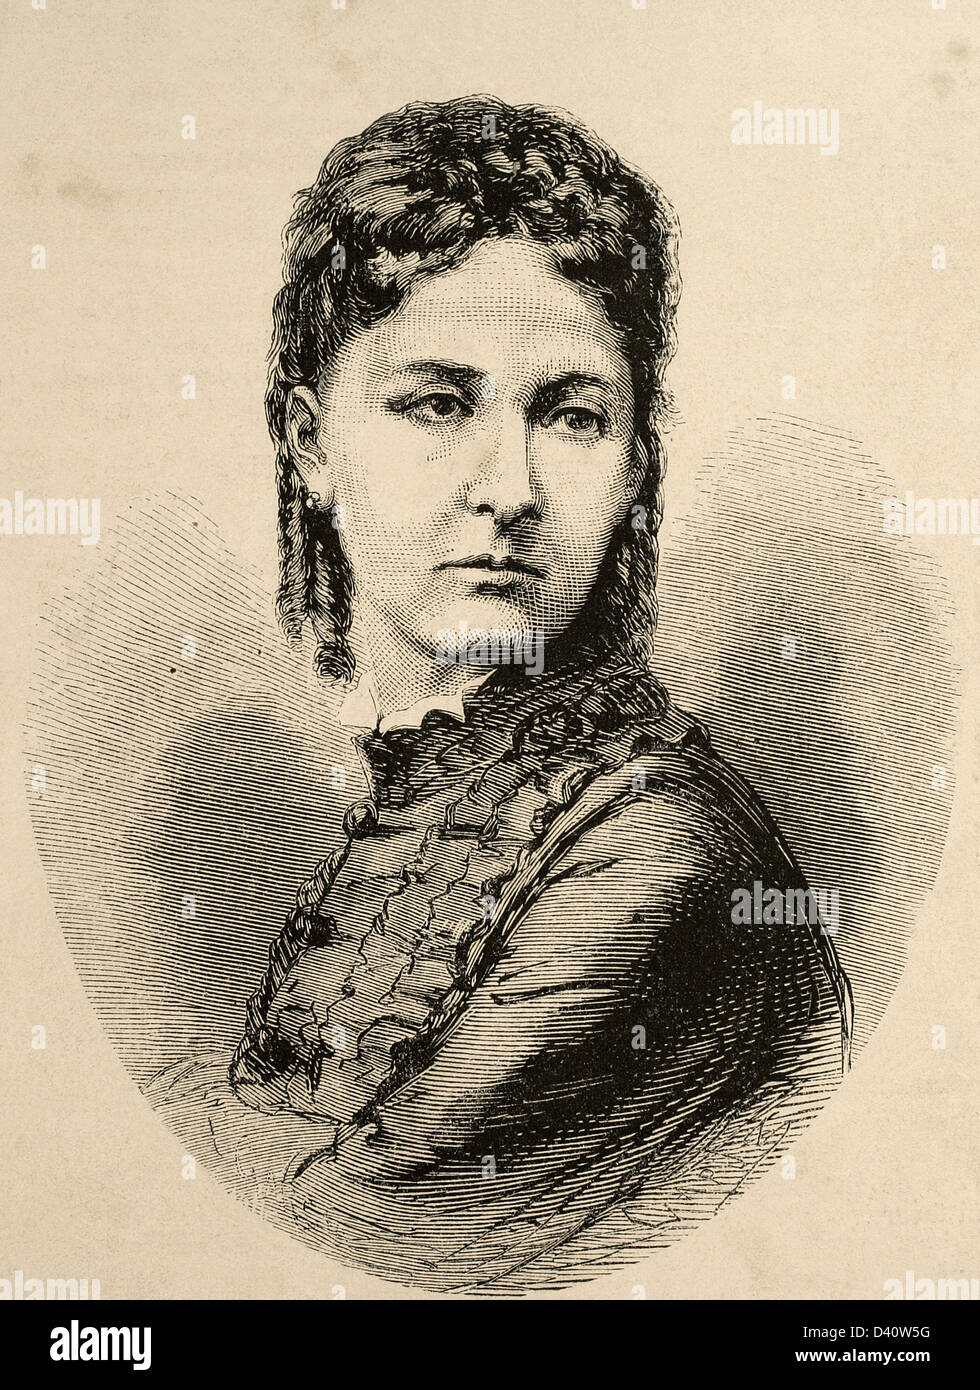 Maria Vittoria dal Pozzo (1867 – 1876). Königin von Spanien. Erste Gemahlin von König Amadeo i. von Spanien. Gravur. Stockfoto